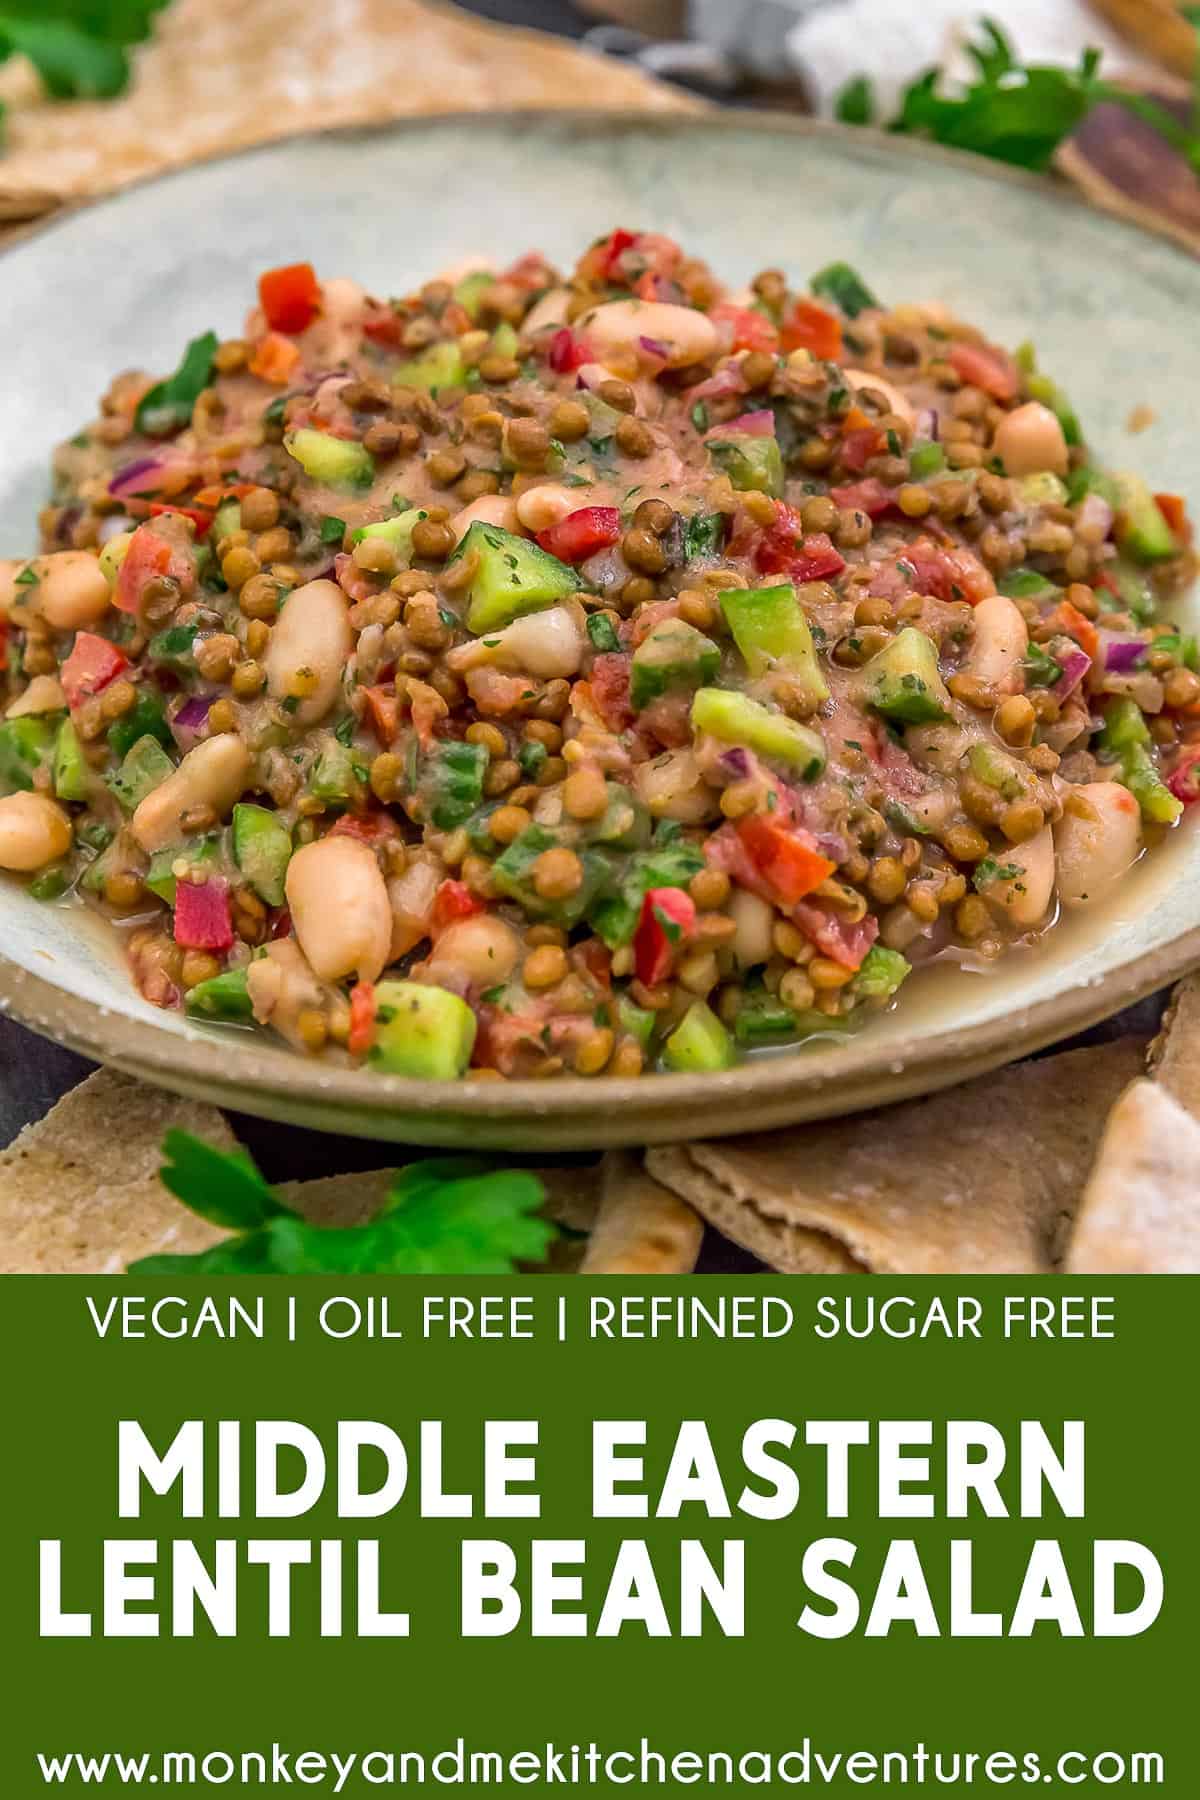 Middle Eastern Lentil Bean Salad with text description